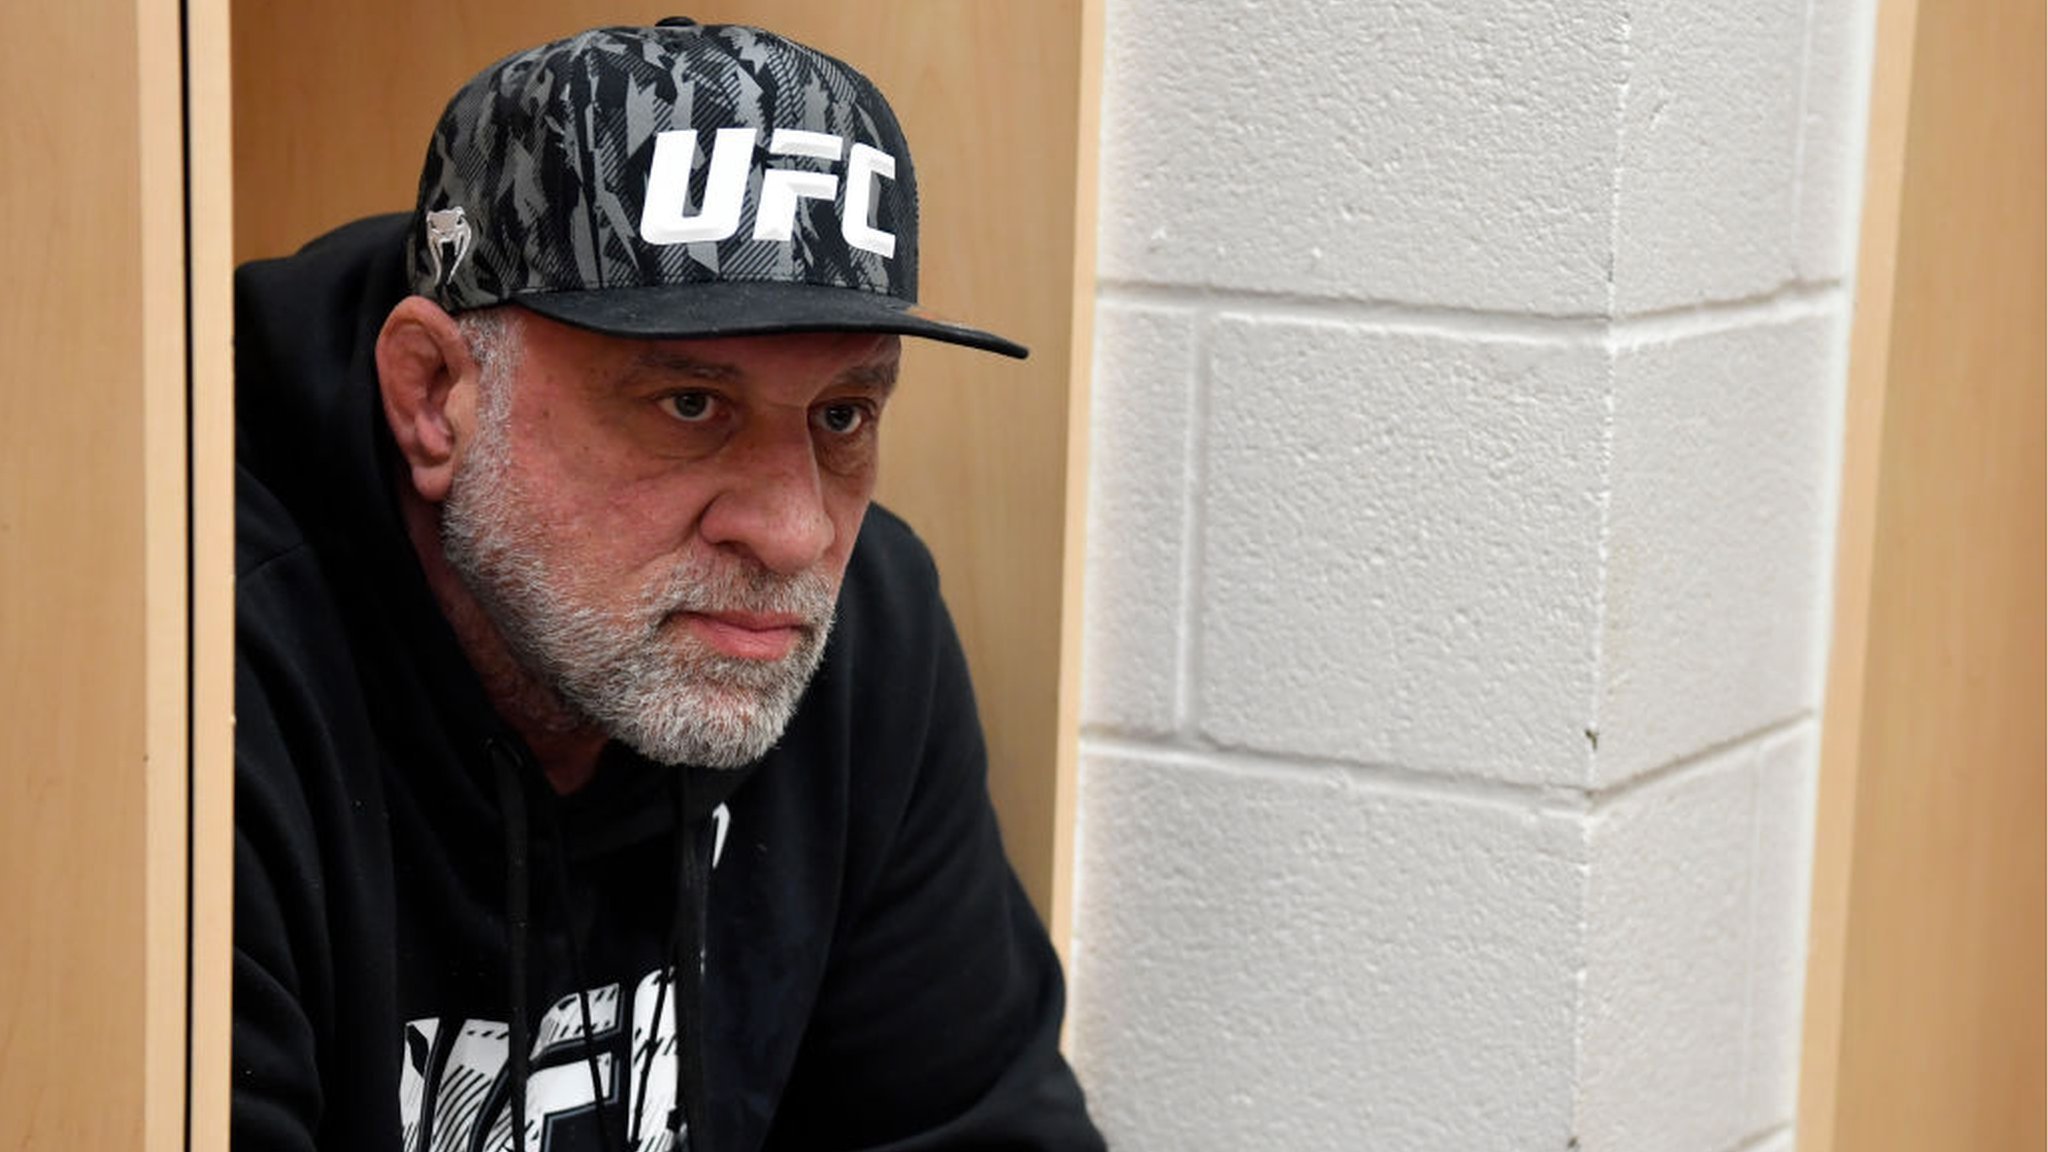 Заболевшего пневмонией члена Зала славы UFC Колмана выписали из больницы